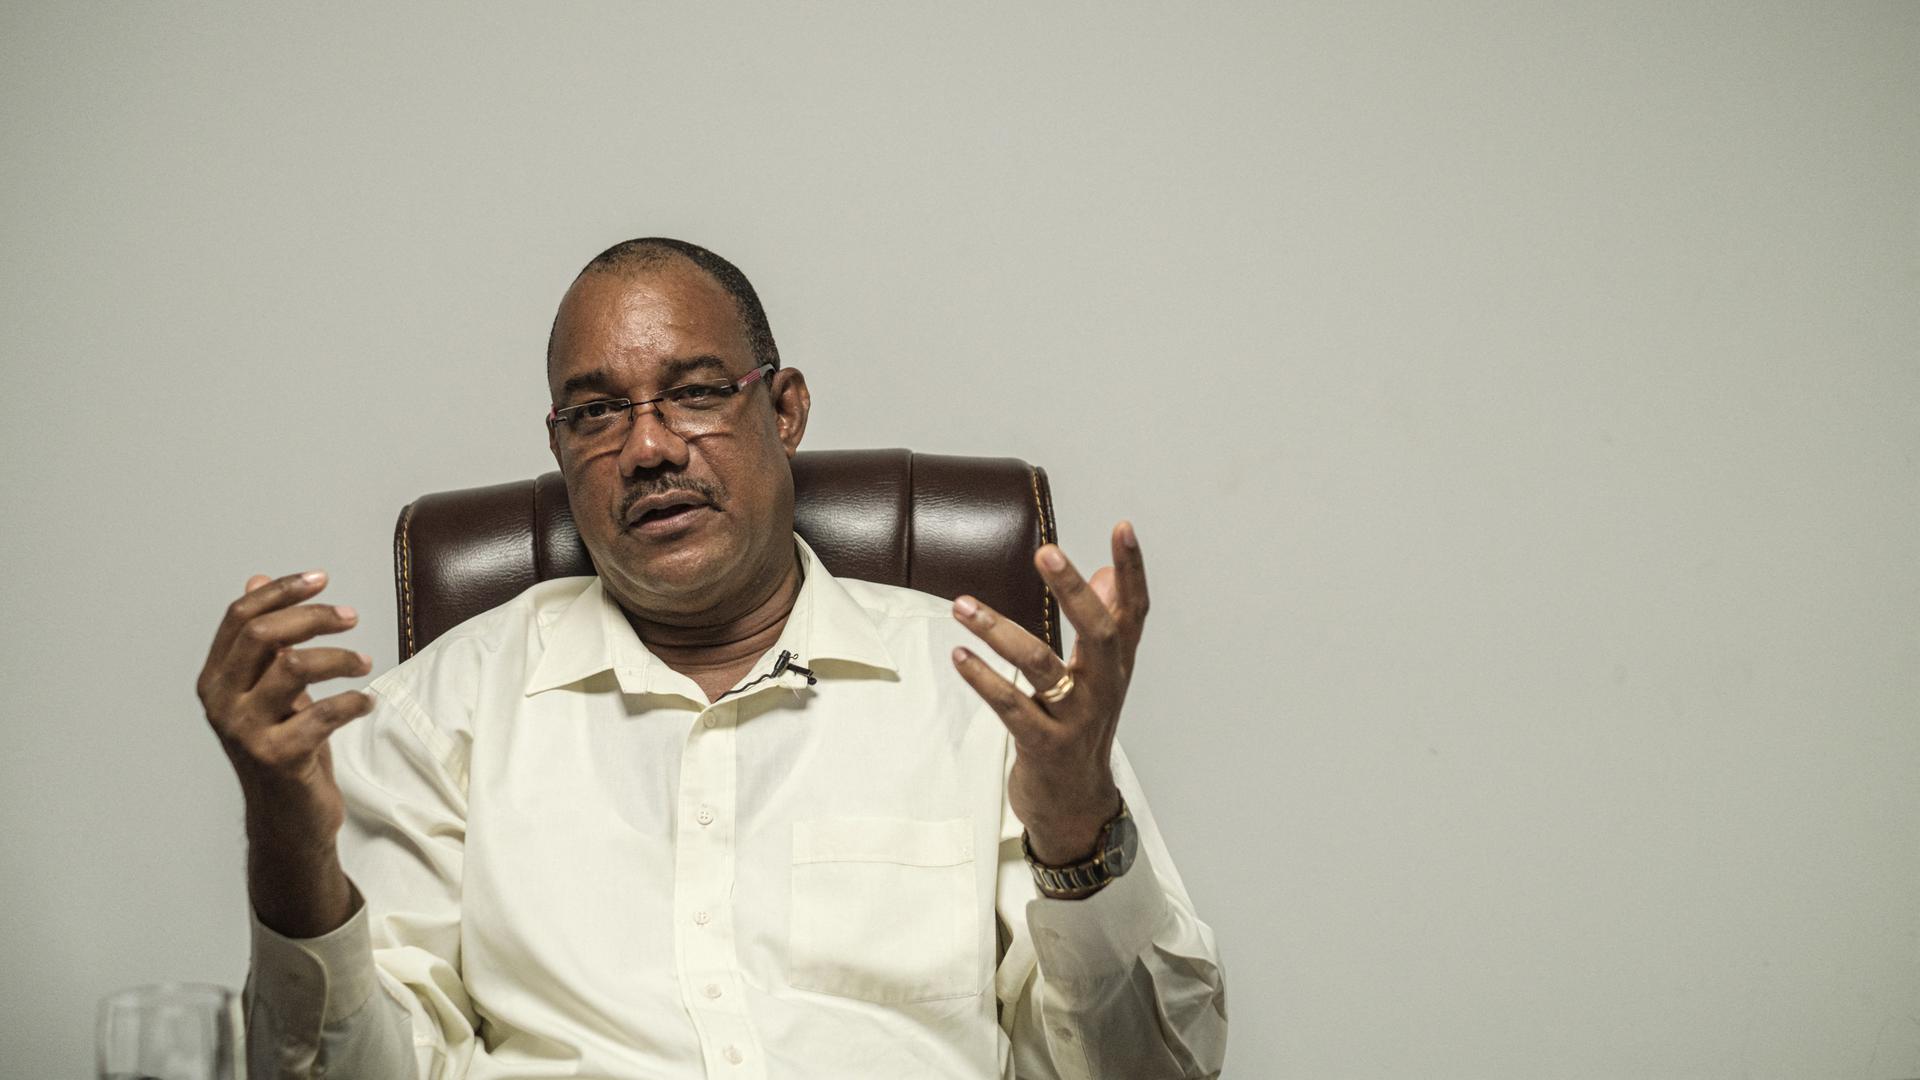 Afrika - Oppositionsführer der Seychellen wegen Verdachts auf "Hexerei" angeklagt